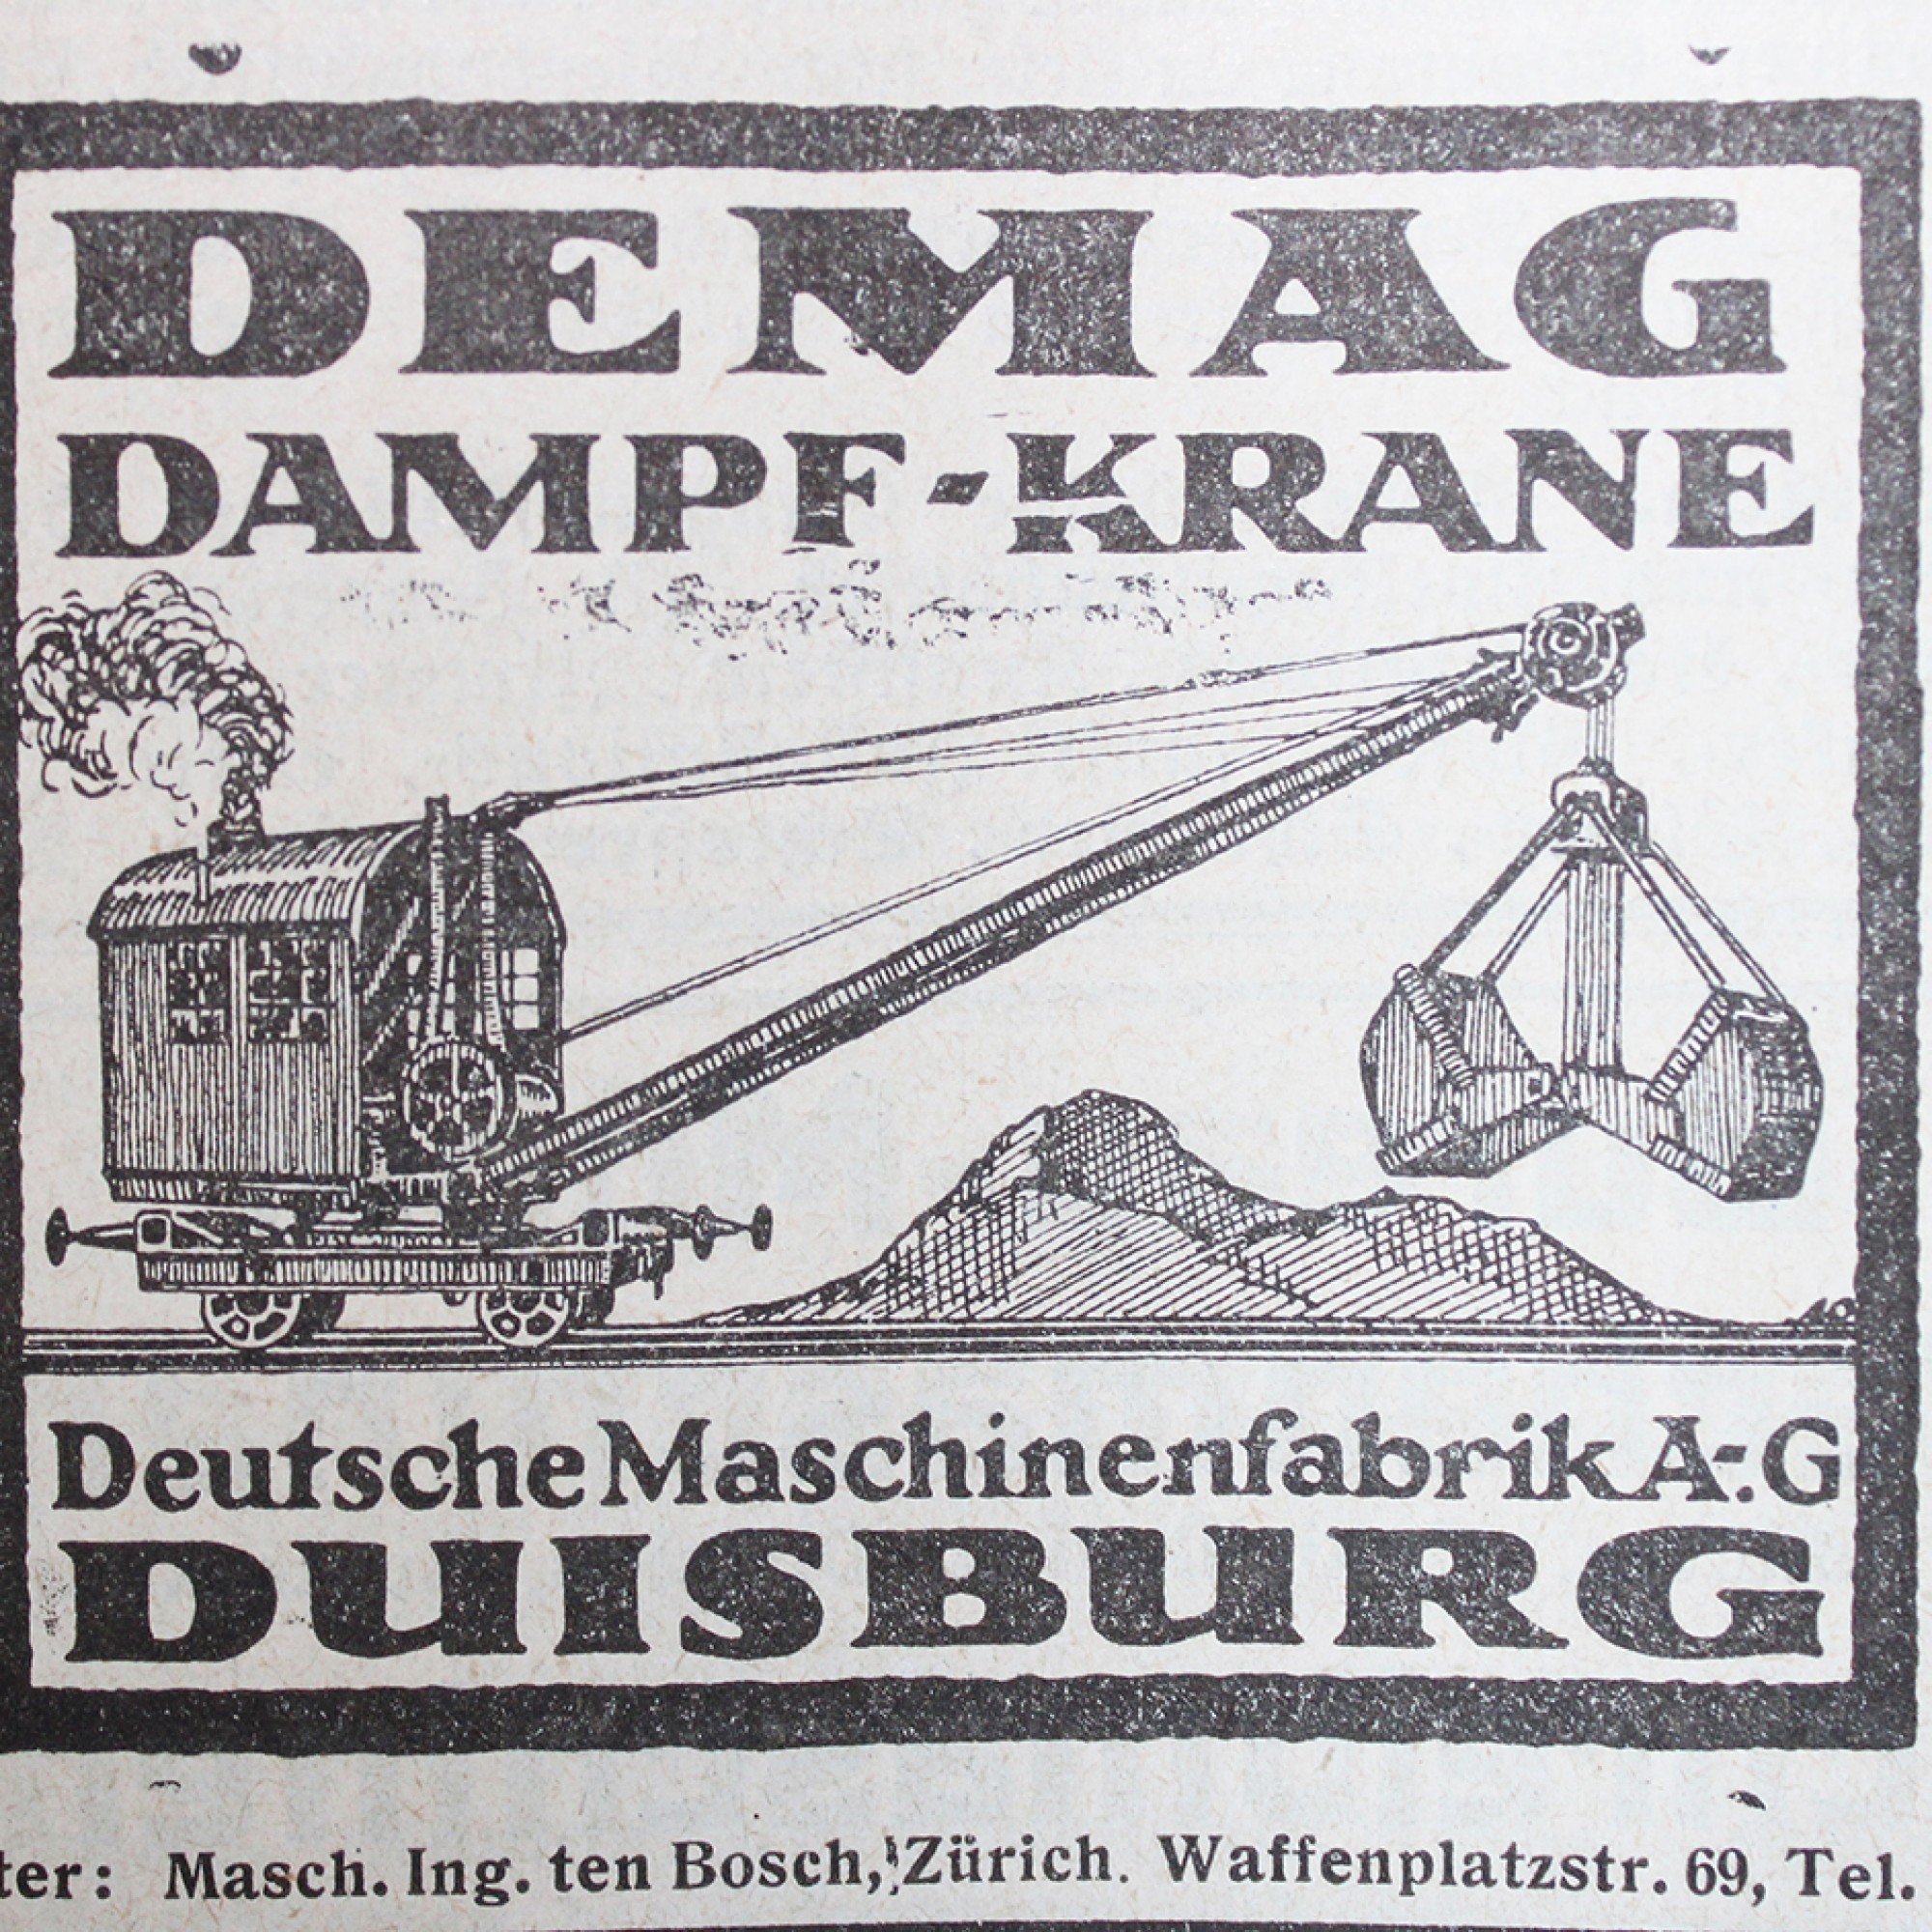 Vom einst grossen deutschen Industriekonzern Demag existieren heute nur noch Einzelunternehmen. Dampf-Krane gibt es hingegen noch. Früher ähnelten sie aber eher einer Zug-Kabine anstatt einer Baumaschine. 